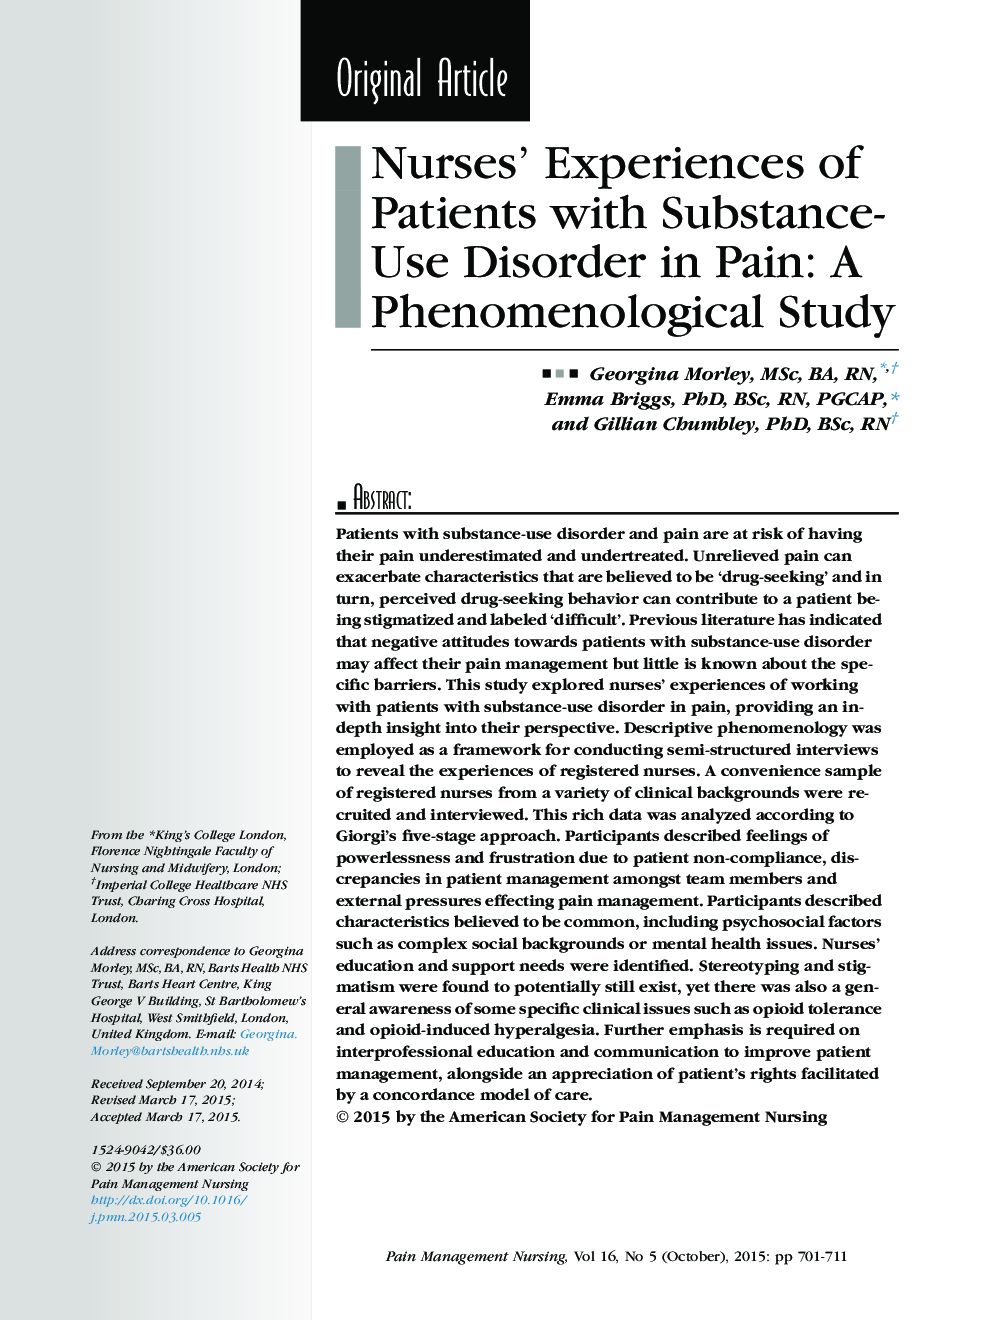 تجربیات پرستاران بیماران مبتلا به اختلال مصرف مواد در درد: مطالعه پدیده شناسی